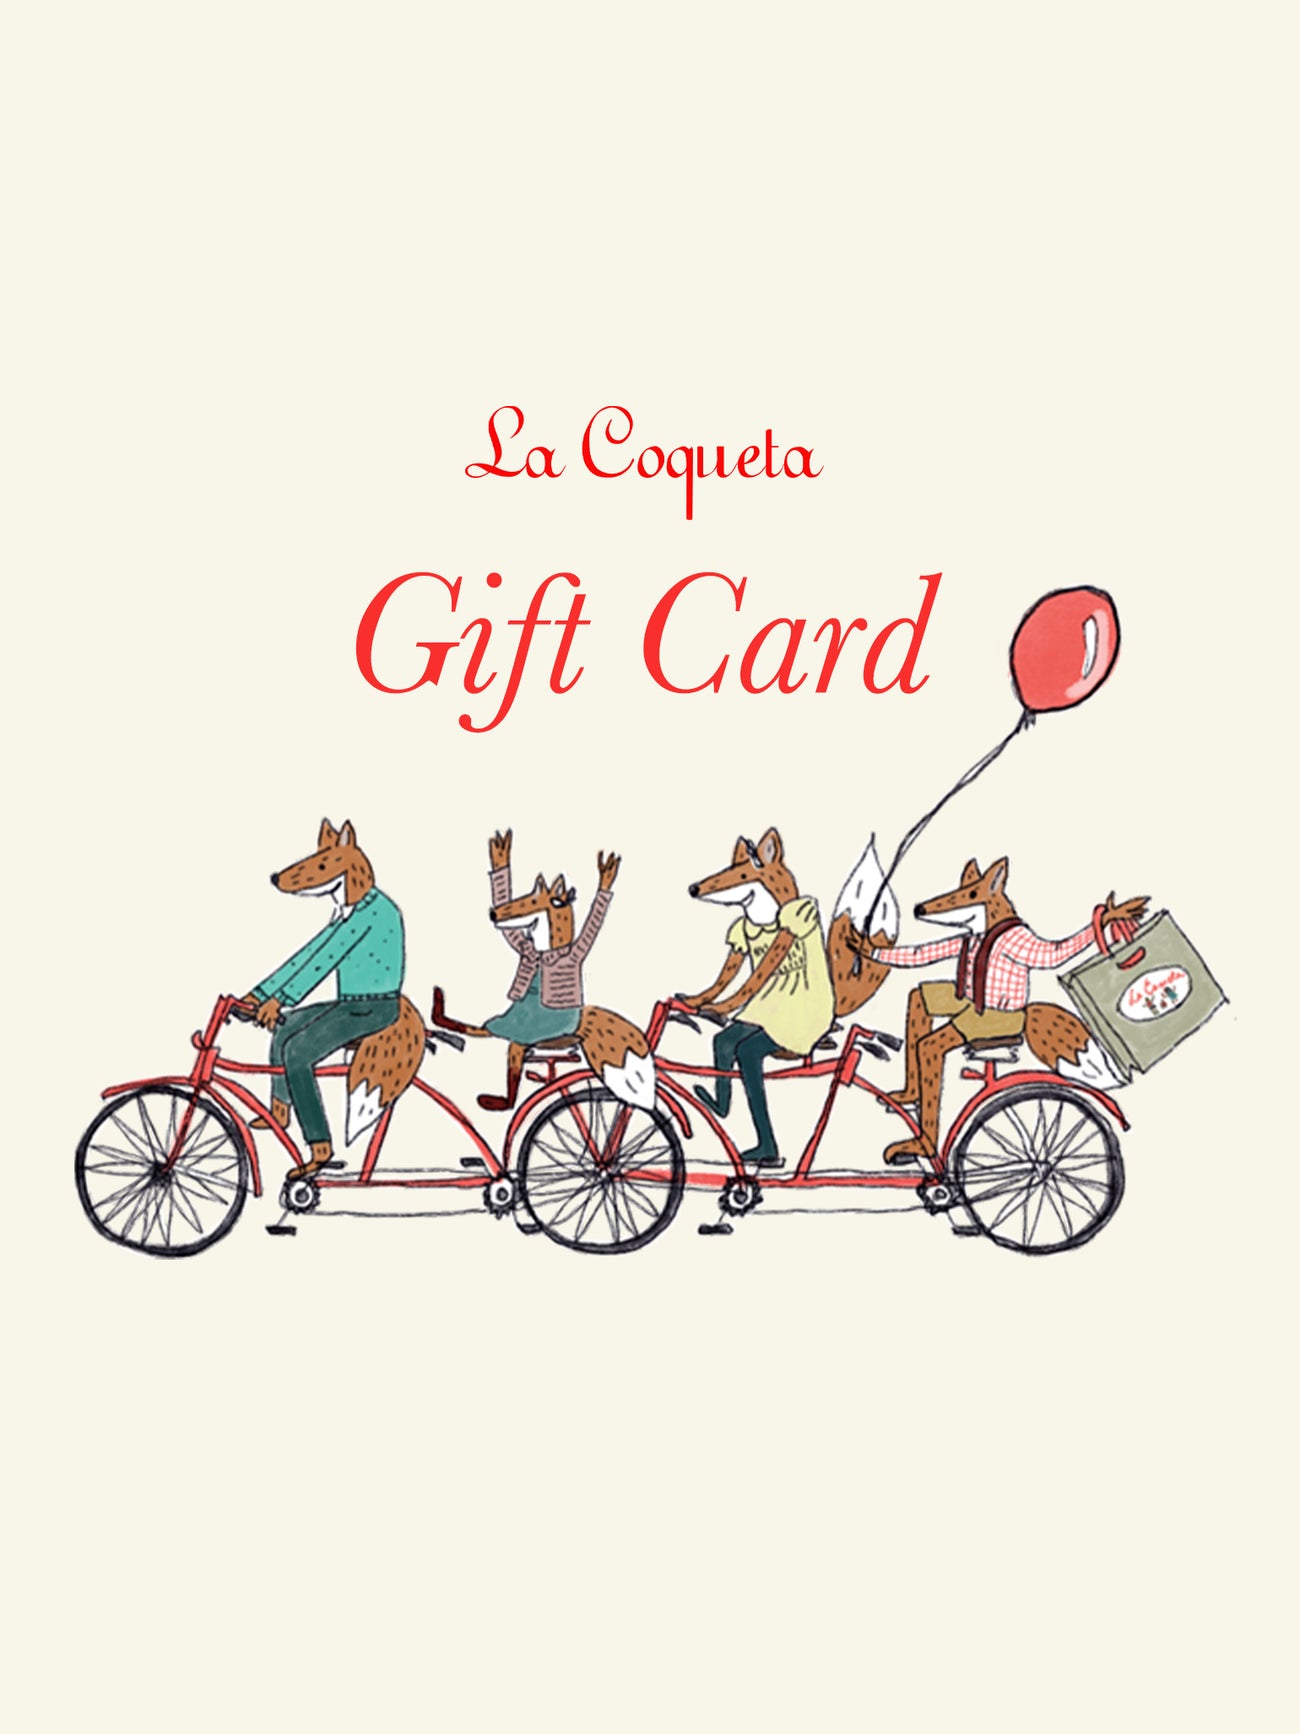 La Coqueta Gift Card